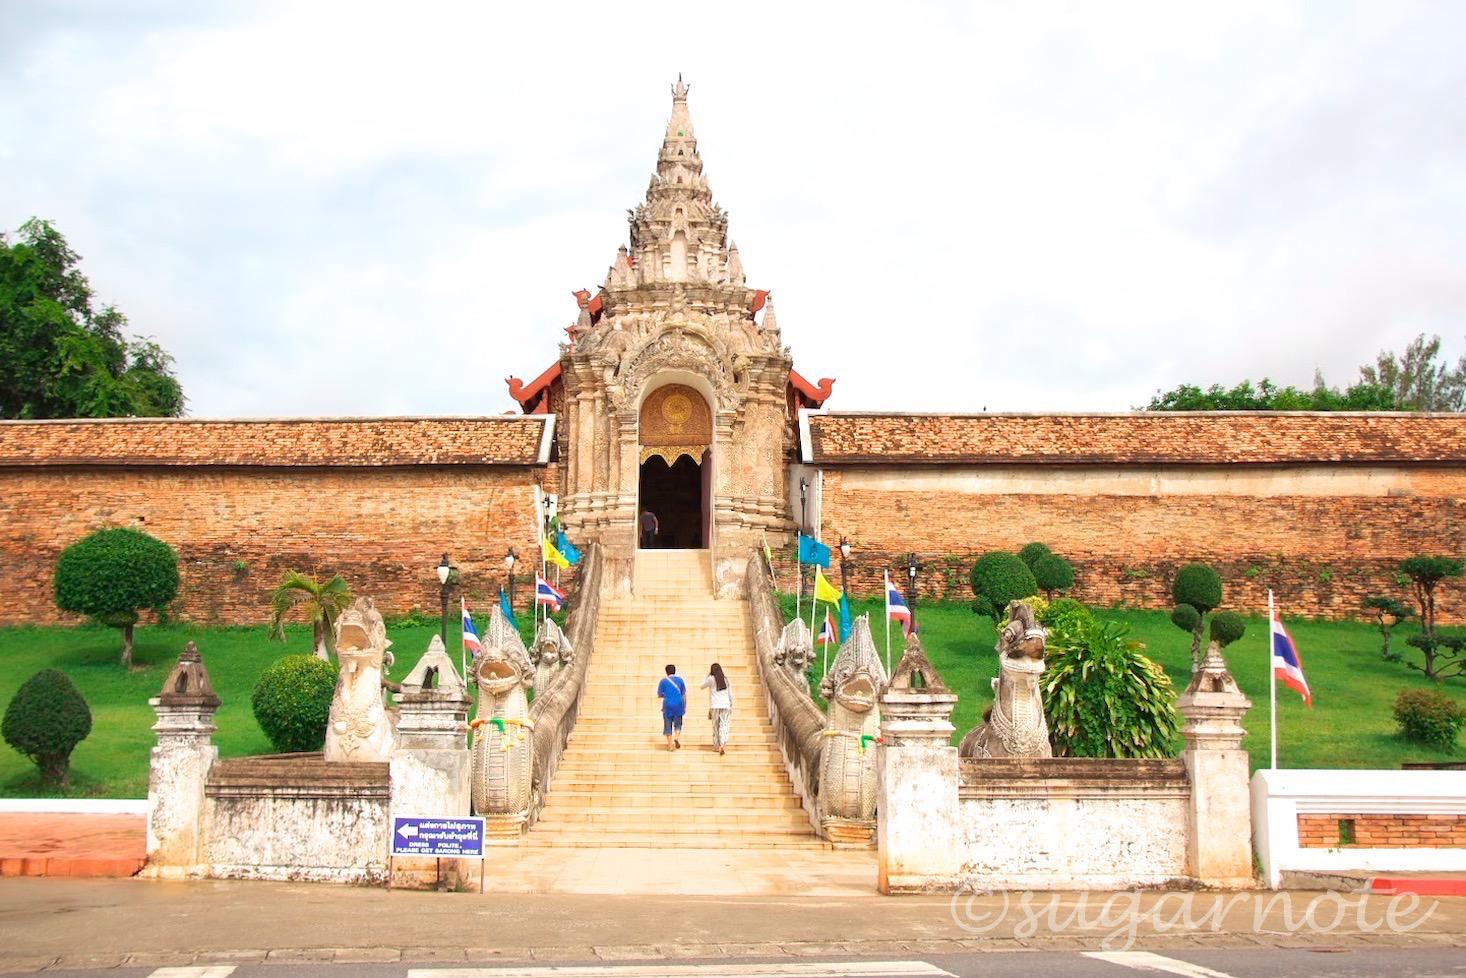 ワット・プラ・タート・ラムパーン・ルアン, Wat Lampan Luang